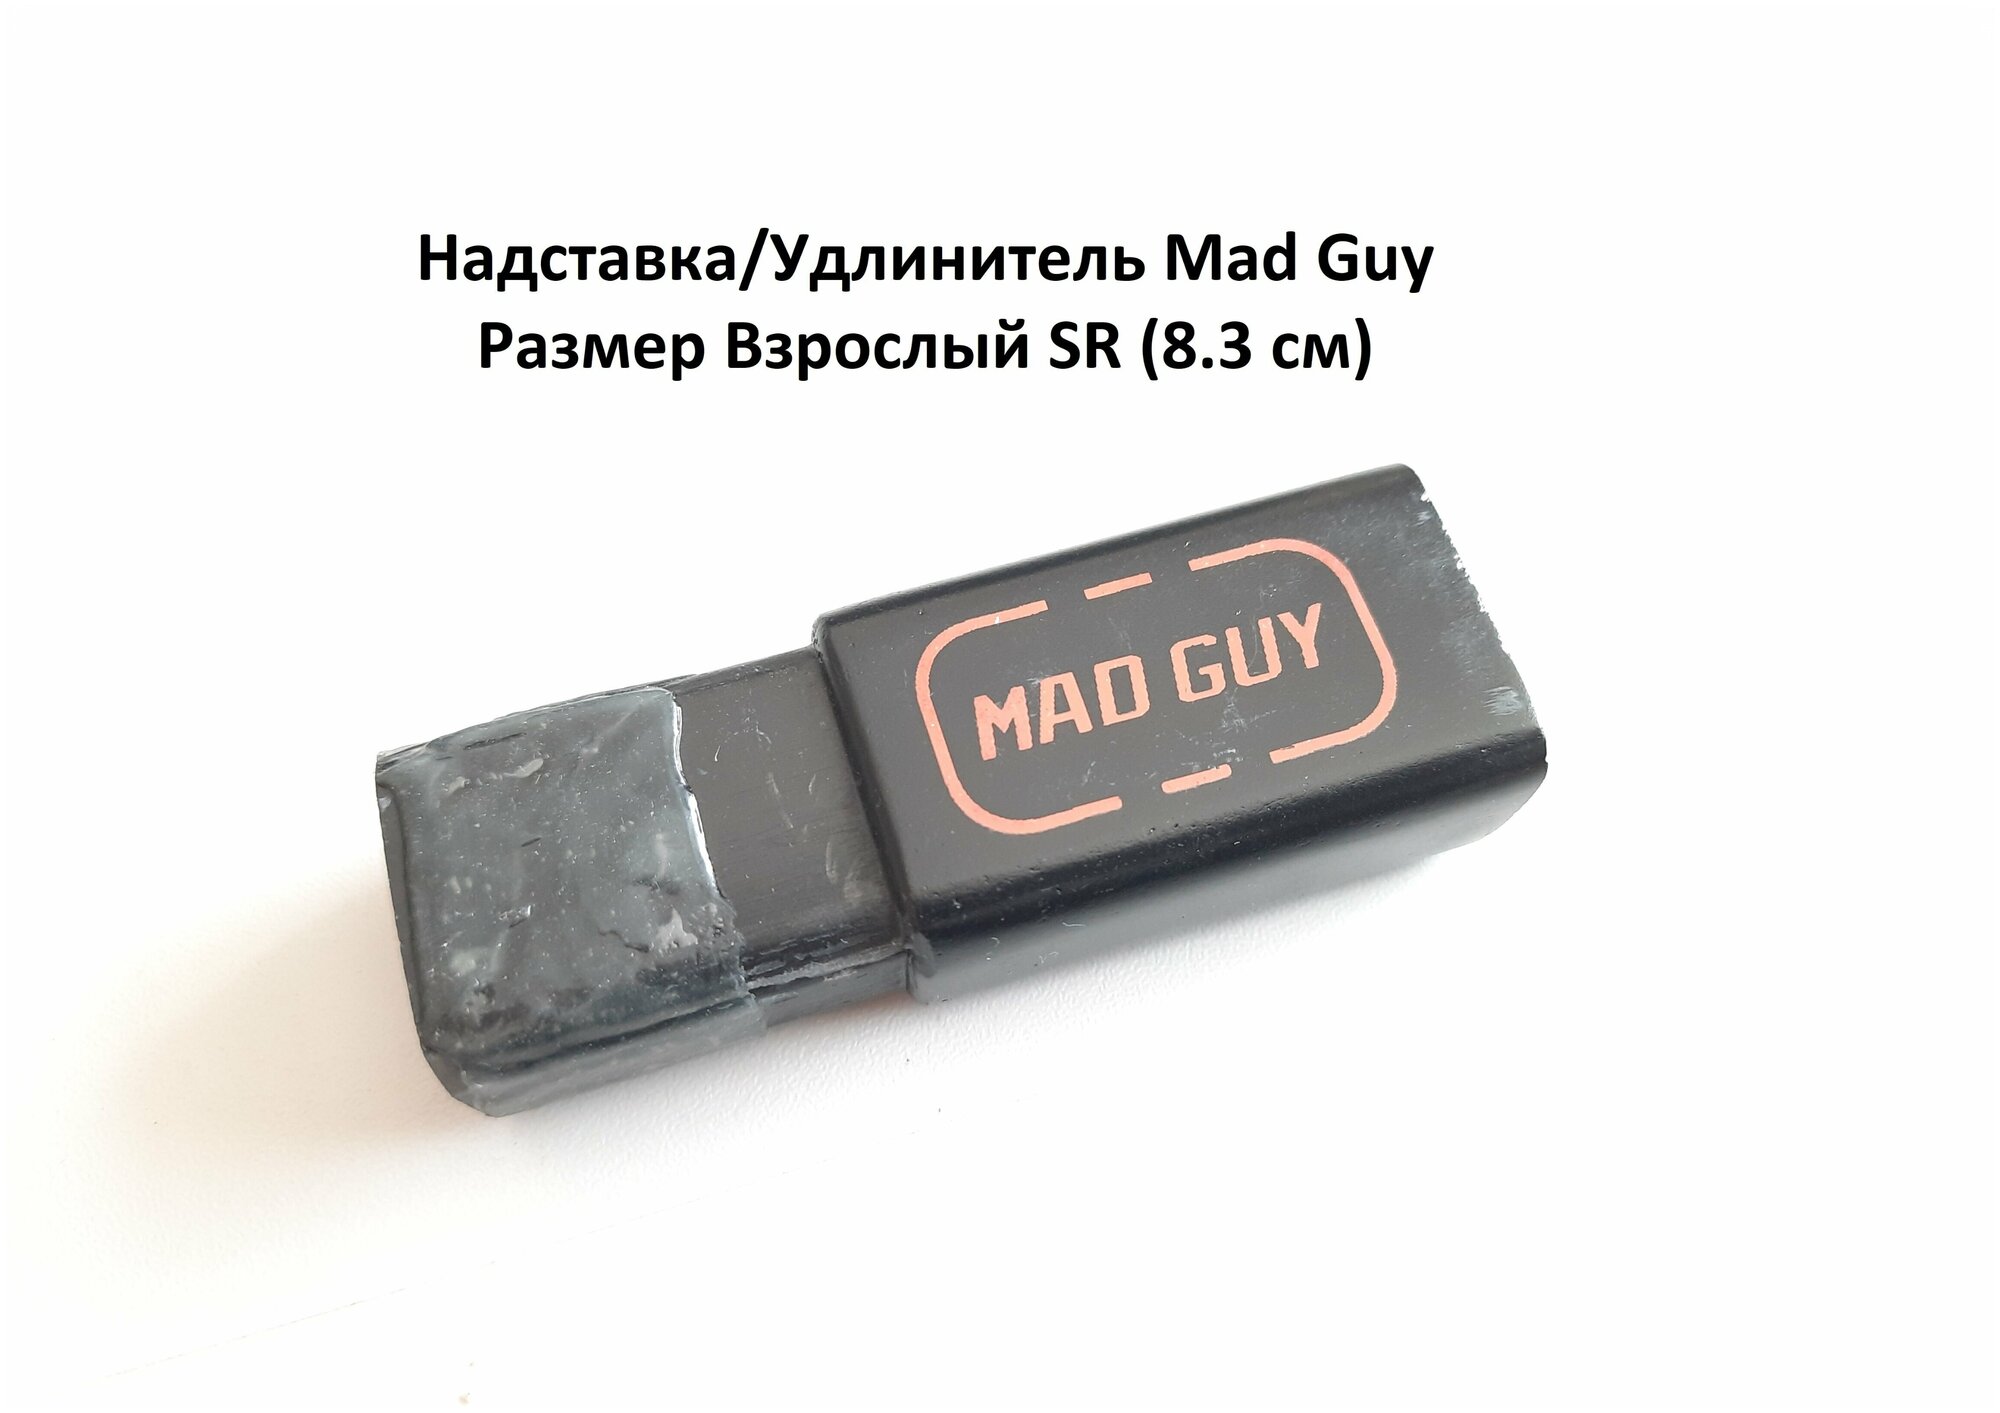 Удлинитель надставка для клюшки Mad Guy SR 8.3 см карбон (композит)